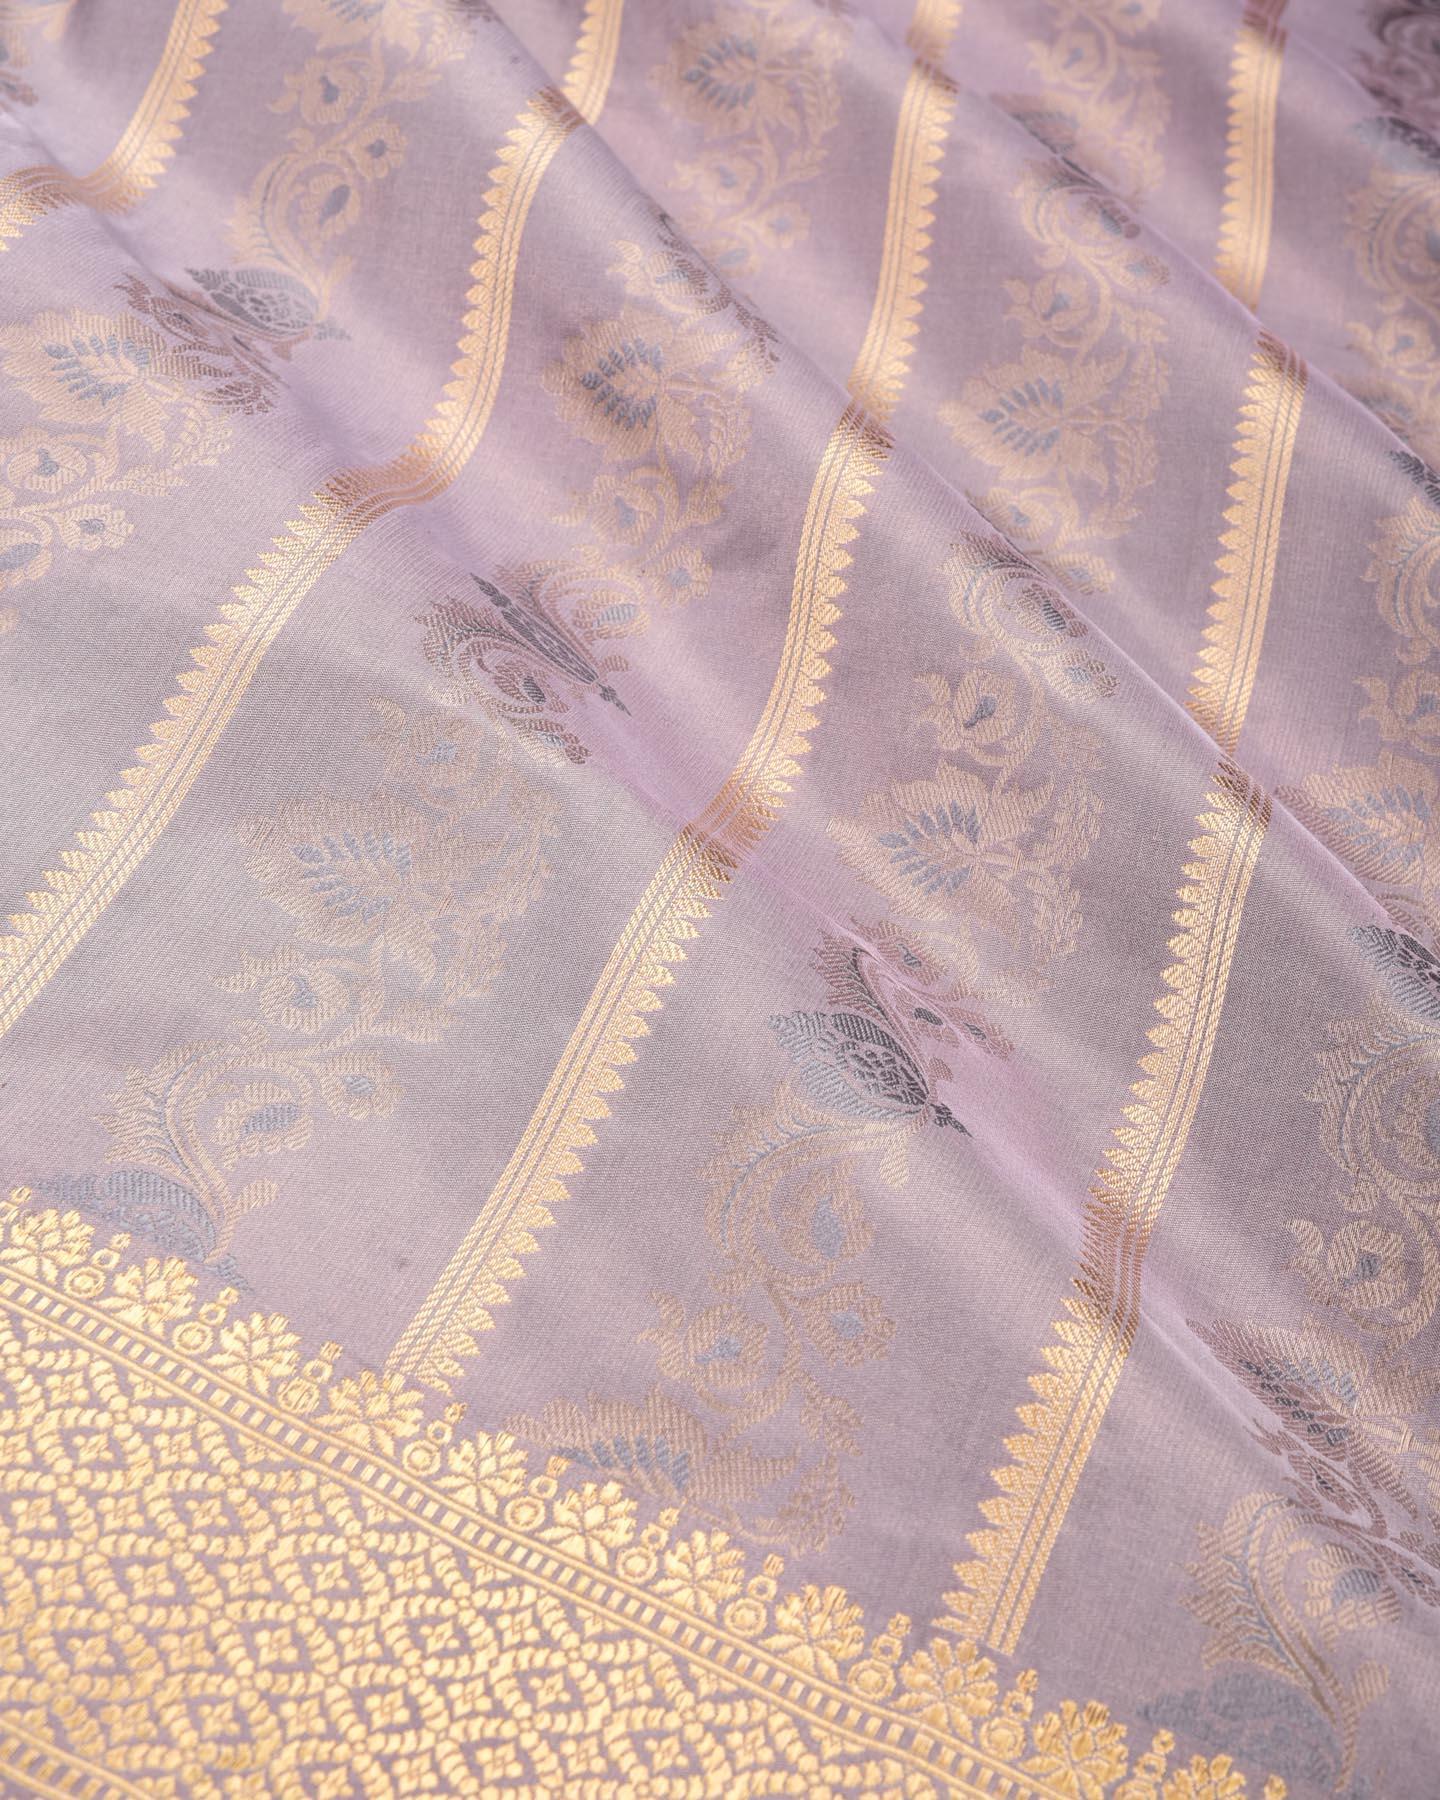 Metalllic Golden Gray Banarasi Tehri Zari & Resham Bel Kadhuan Brocade Handwoven Katan Tissue Saree - By HolyWeaves, Benares